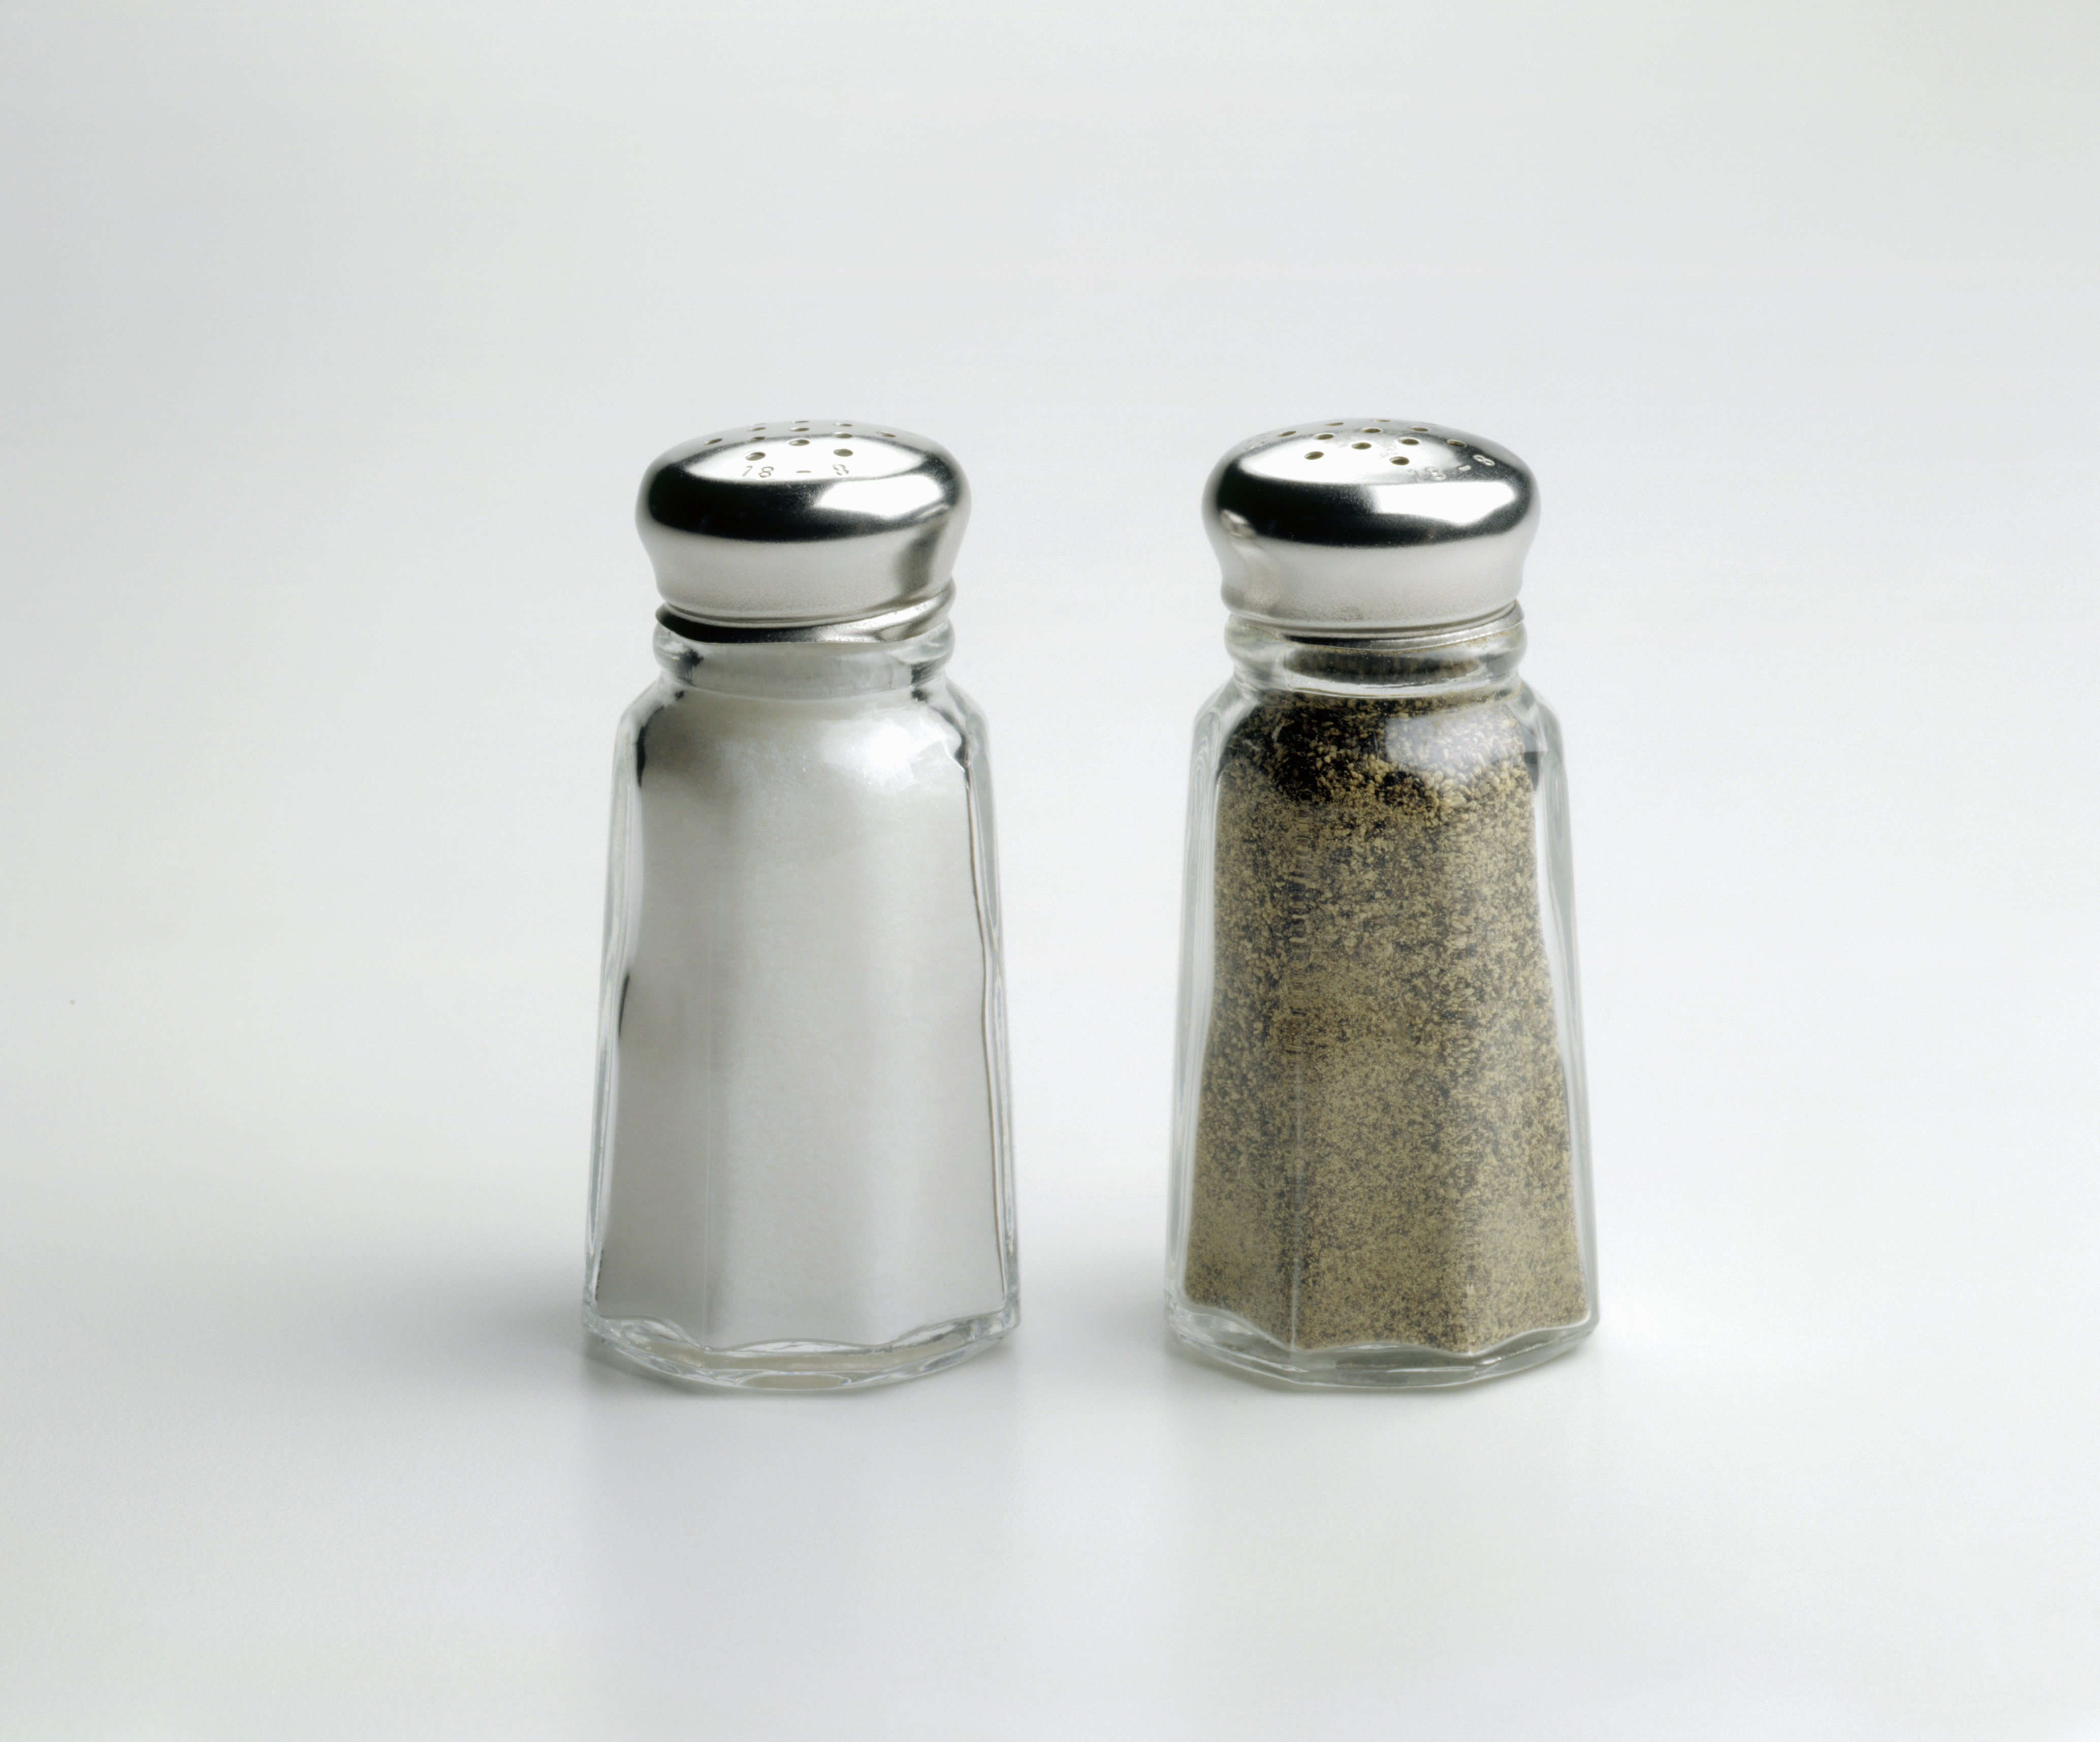 Salt and Pepper Shaker on White